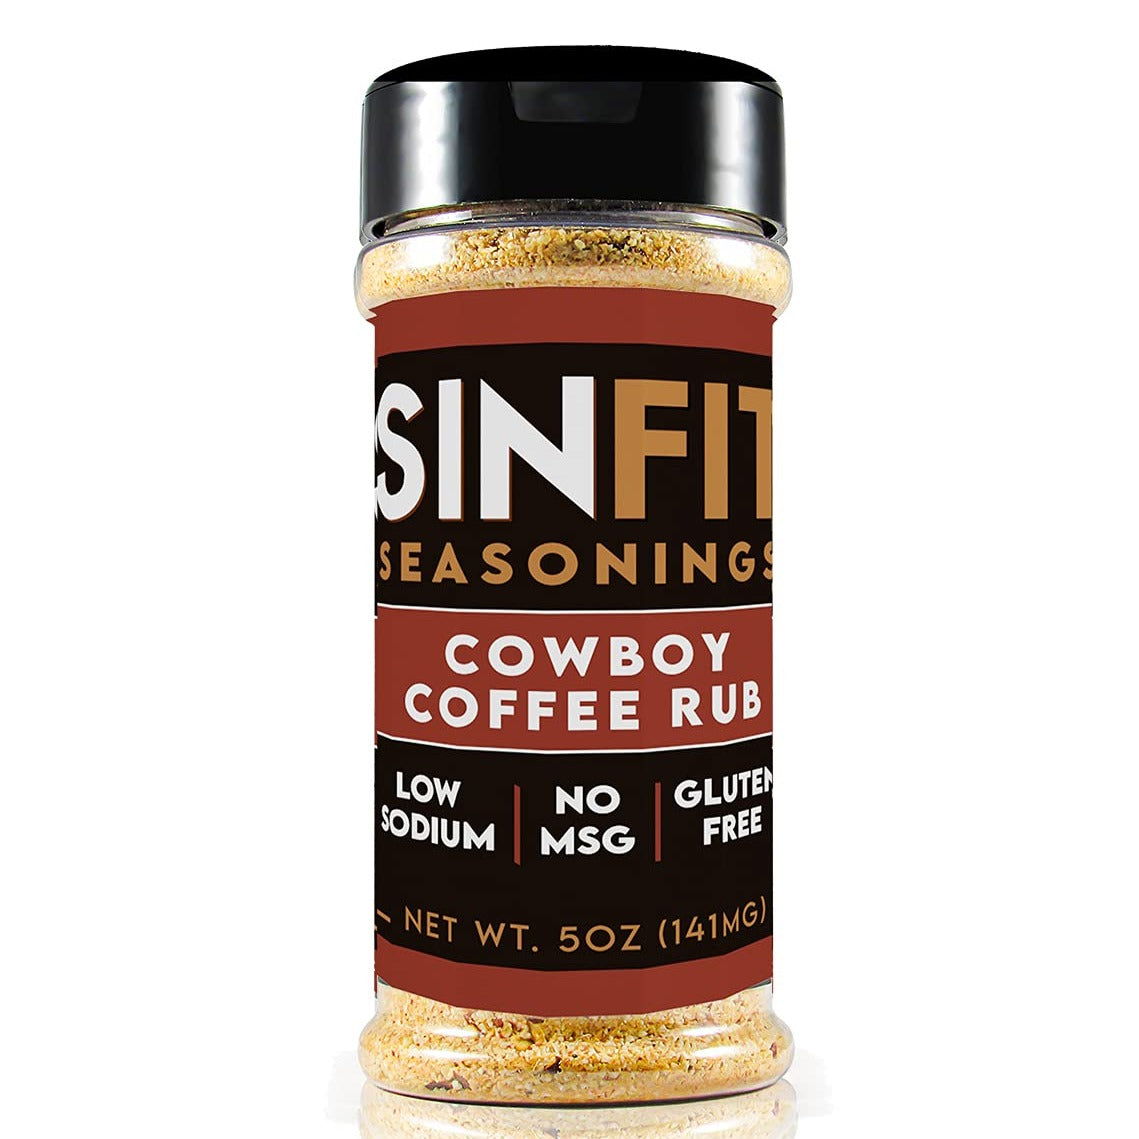 Sinfit Nutrition Seasonings sinfit-seasonings Protein Snacks Cowboy Coffee Rub Sinfit Nutrition